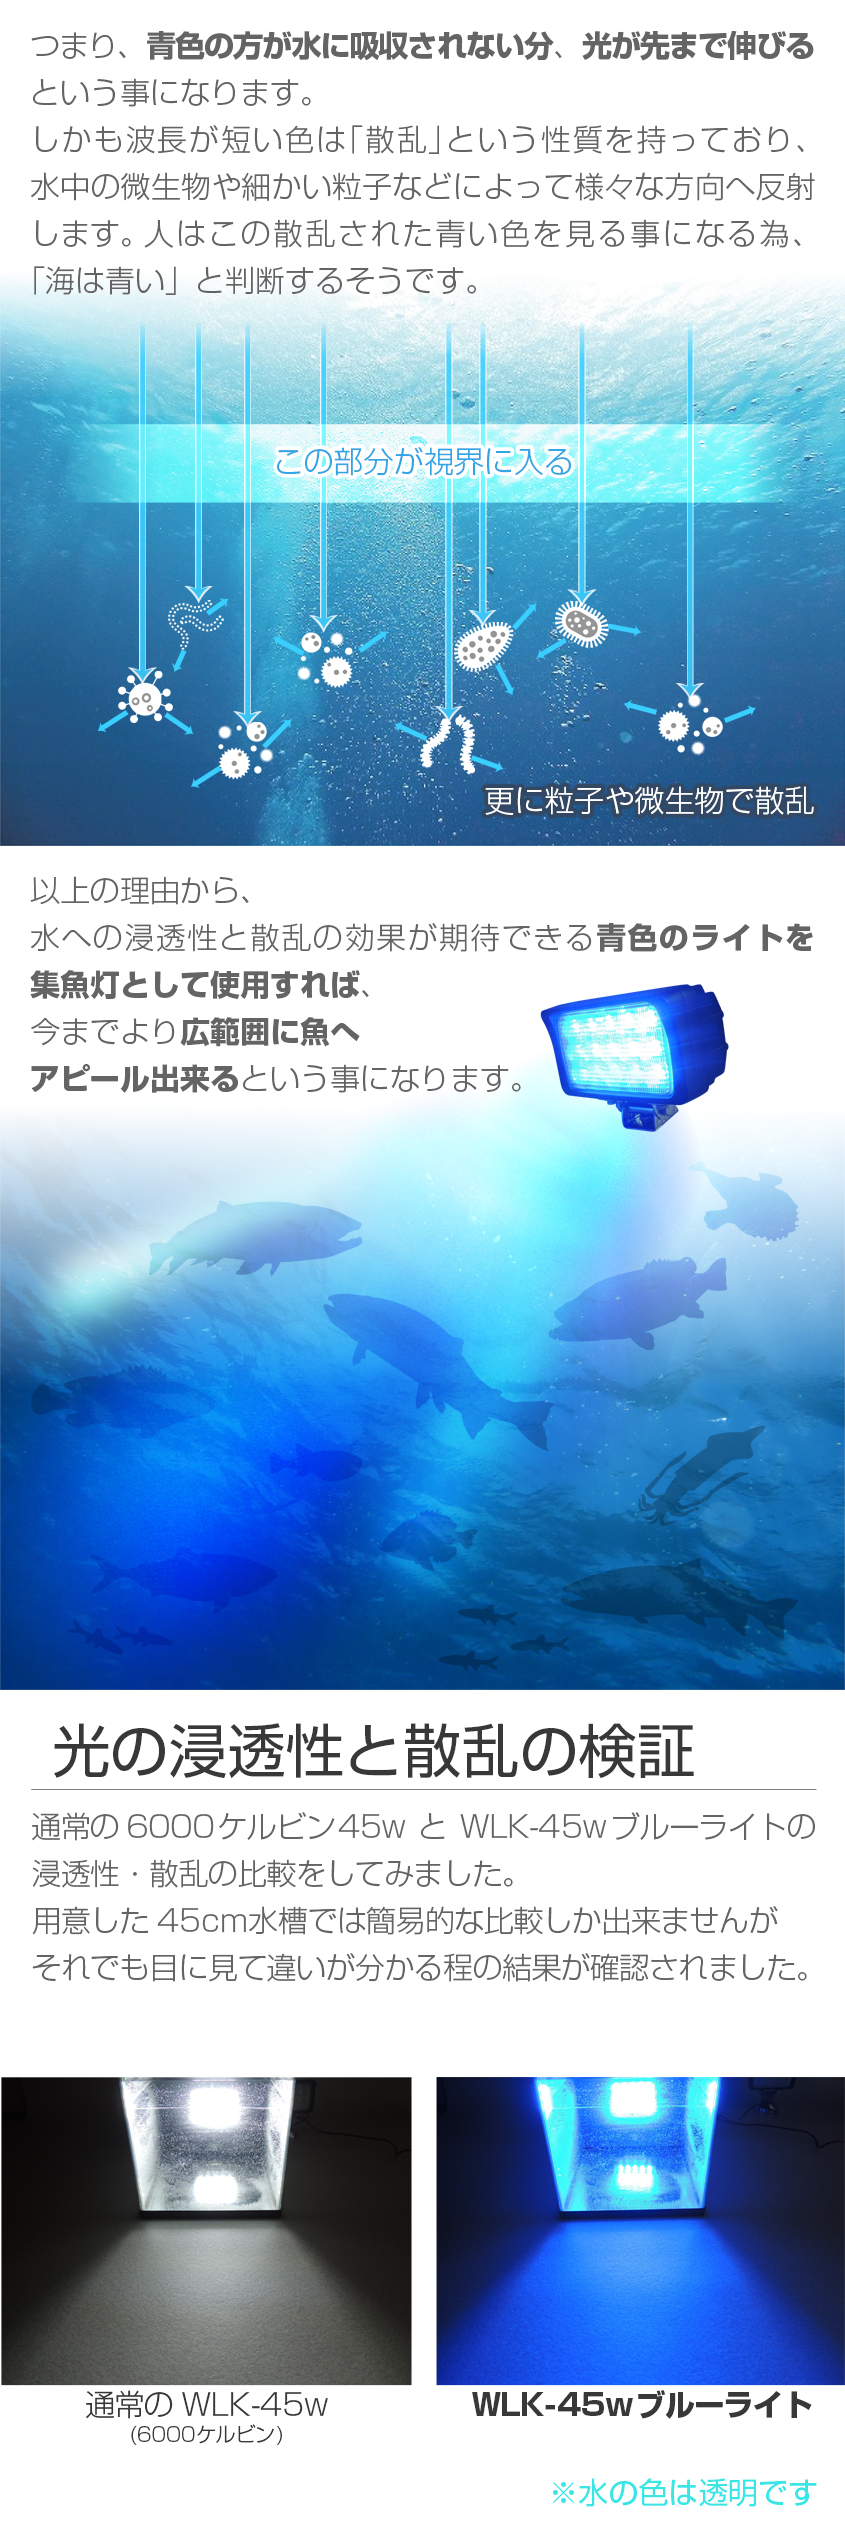 集魚灯 アジ 釣り 青 45w 集魚ライト 12v 24v バッテリー対応 ブルーライト LEDチップ搭載 タチウオ いさき サンマ 投光器 イカ釣り  ライト wlk-45w-blue K'sガレージ 通販 